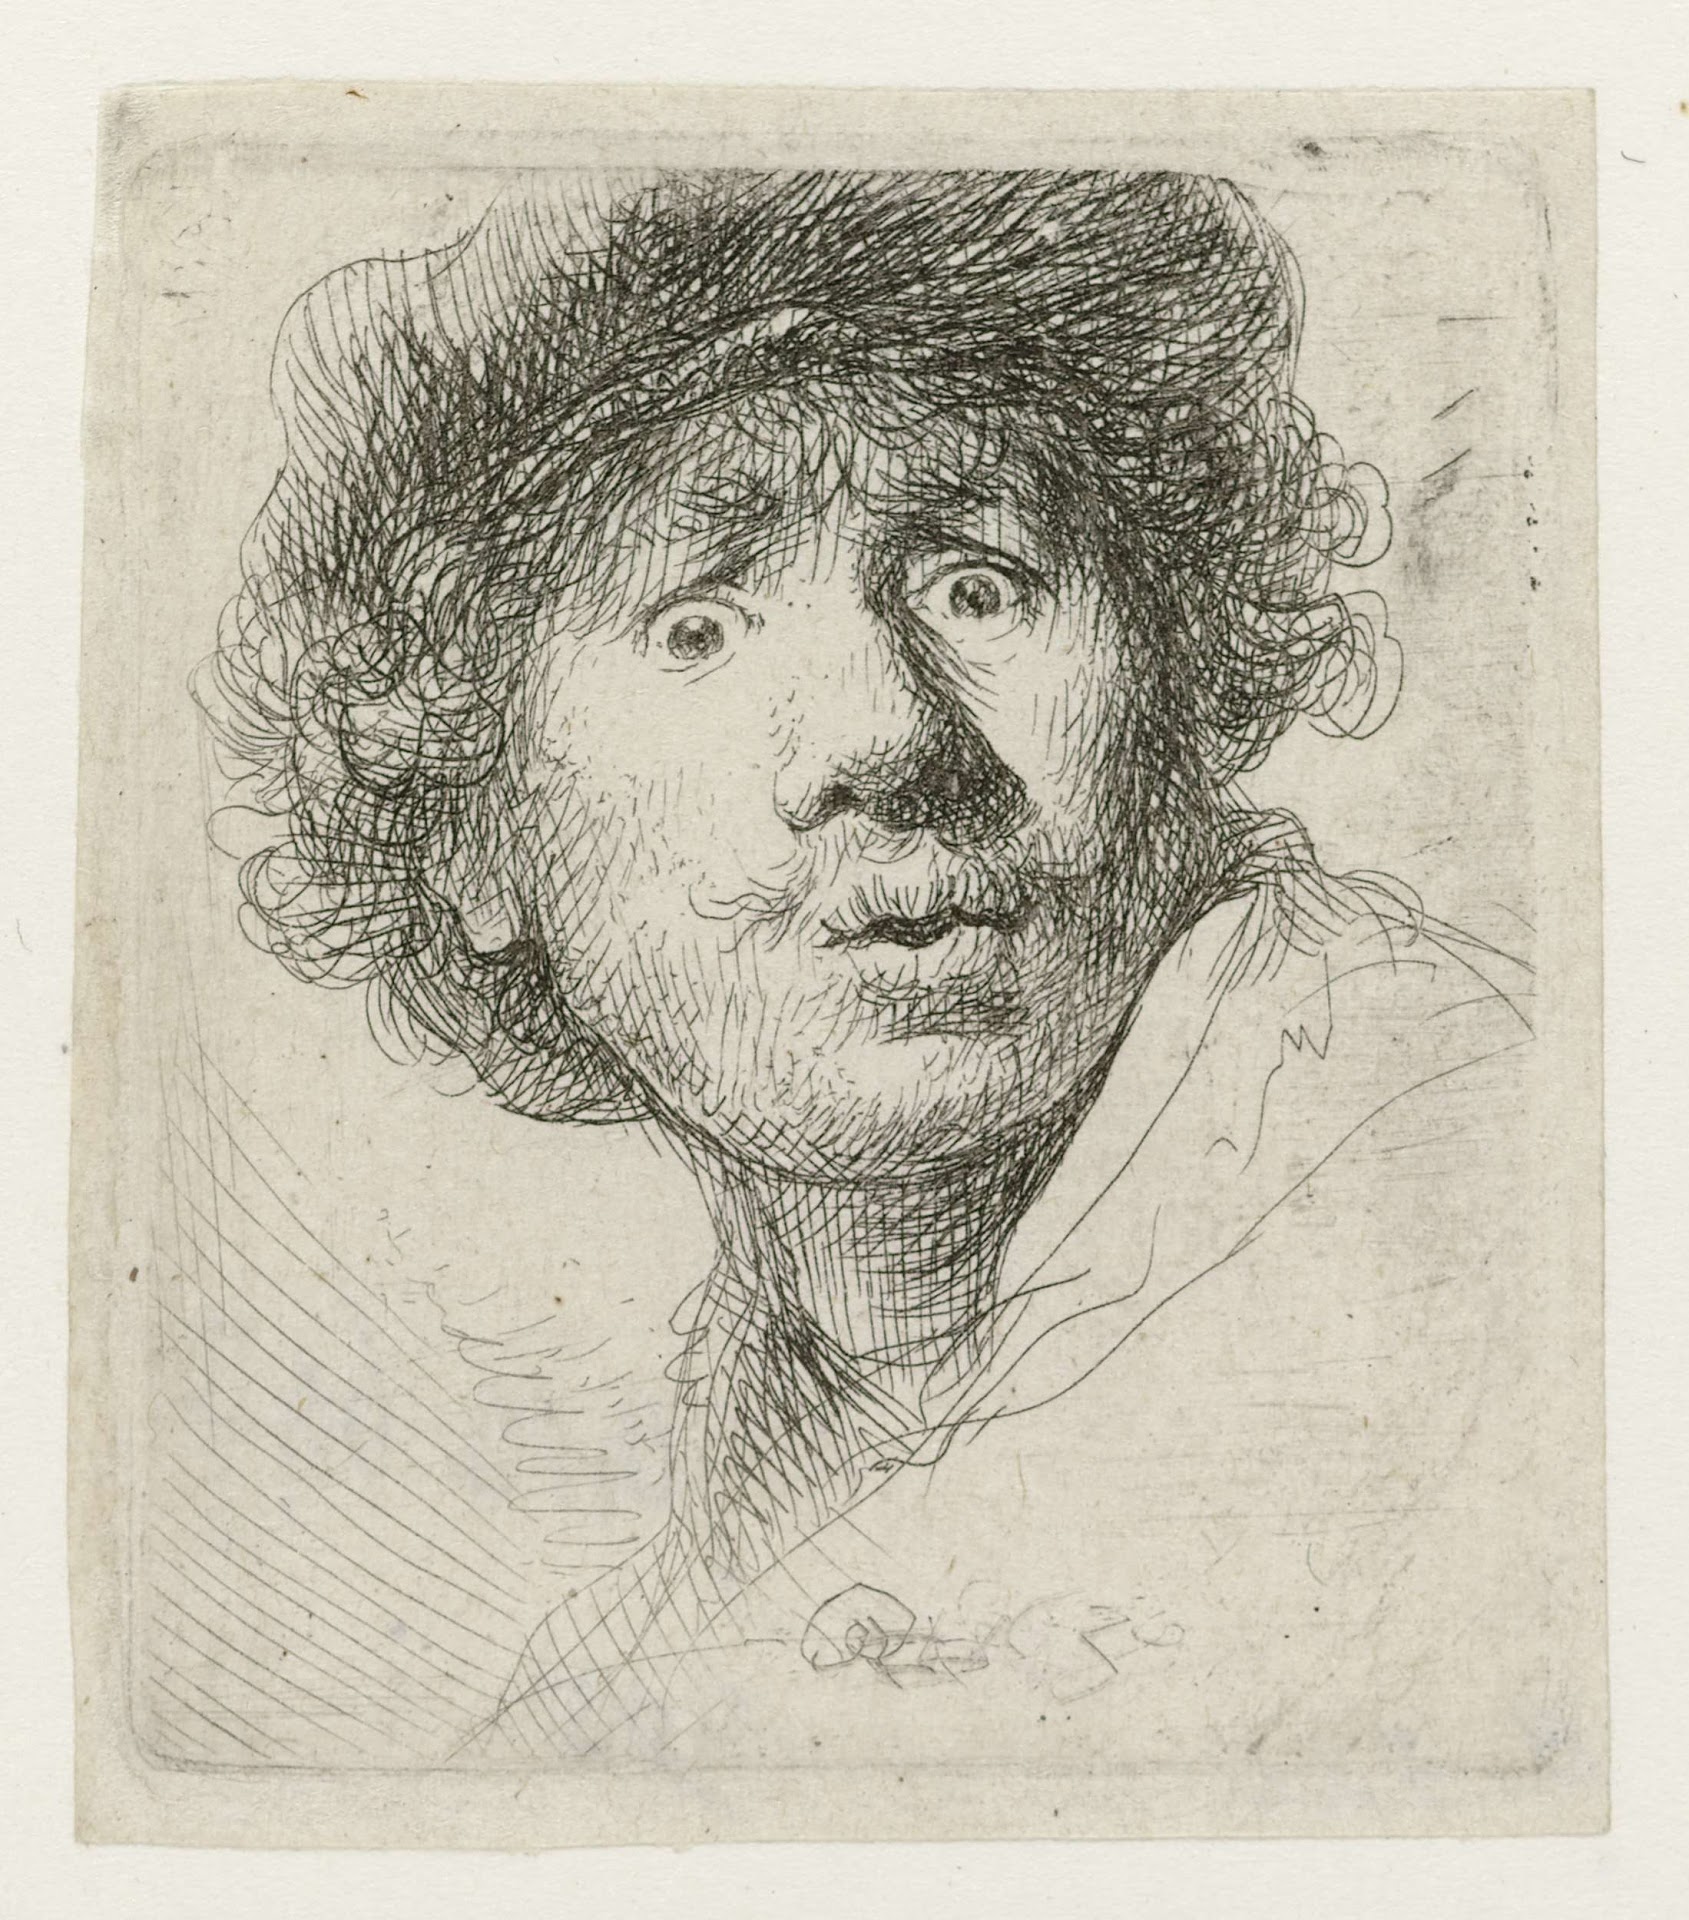 Автопортрет с широко открытыми глазами by Rembrandt van Rijn - 1630 - 51 x 46 мм 